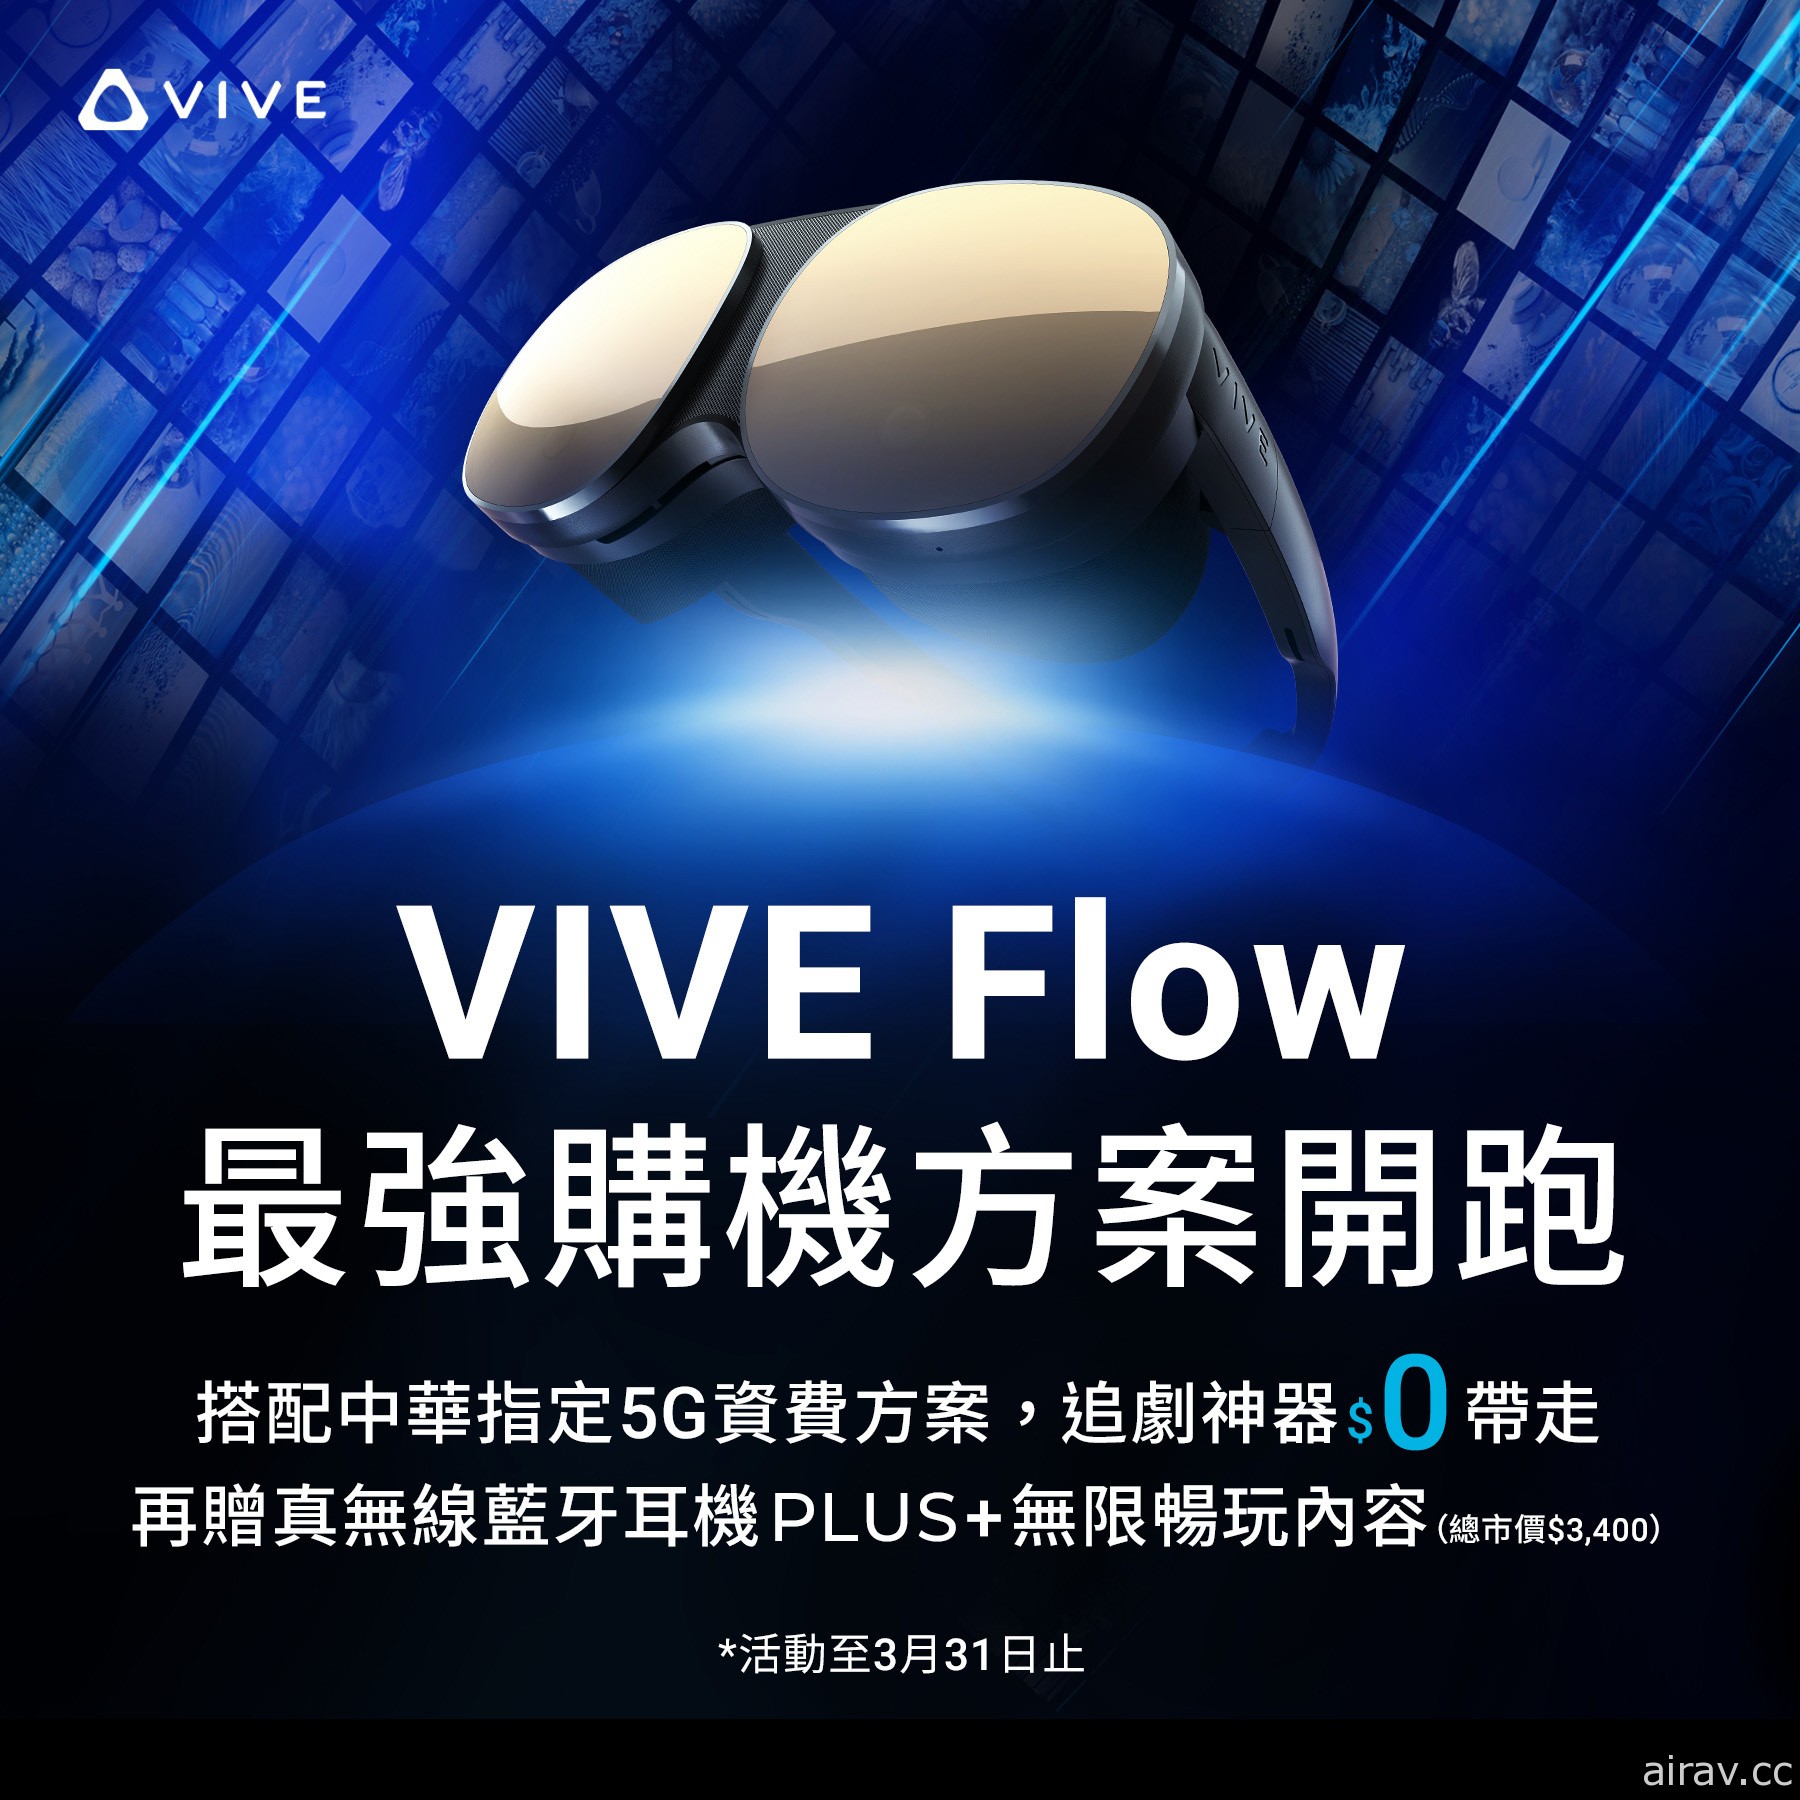 首家 HTC VIVERSE 體驗館登場  VIVE Flow 推出限時優惠方案